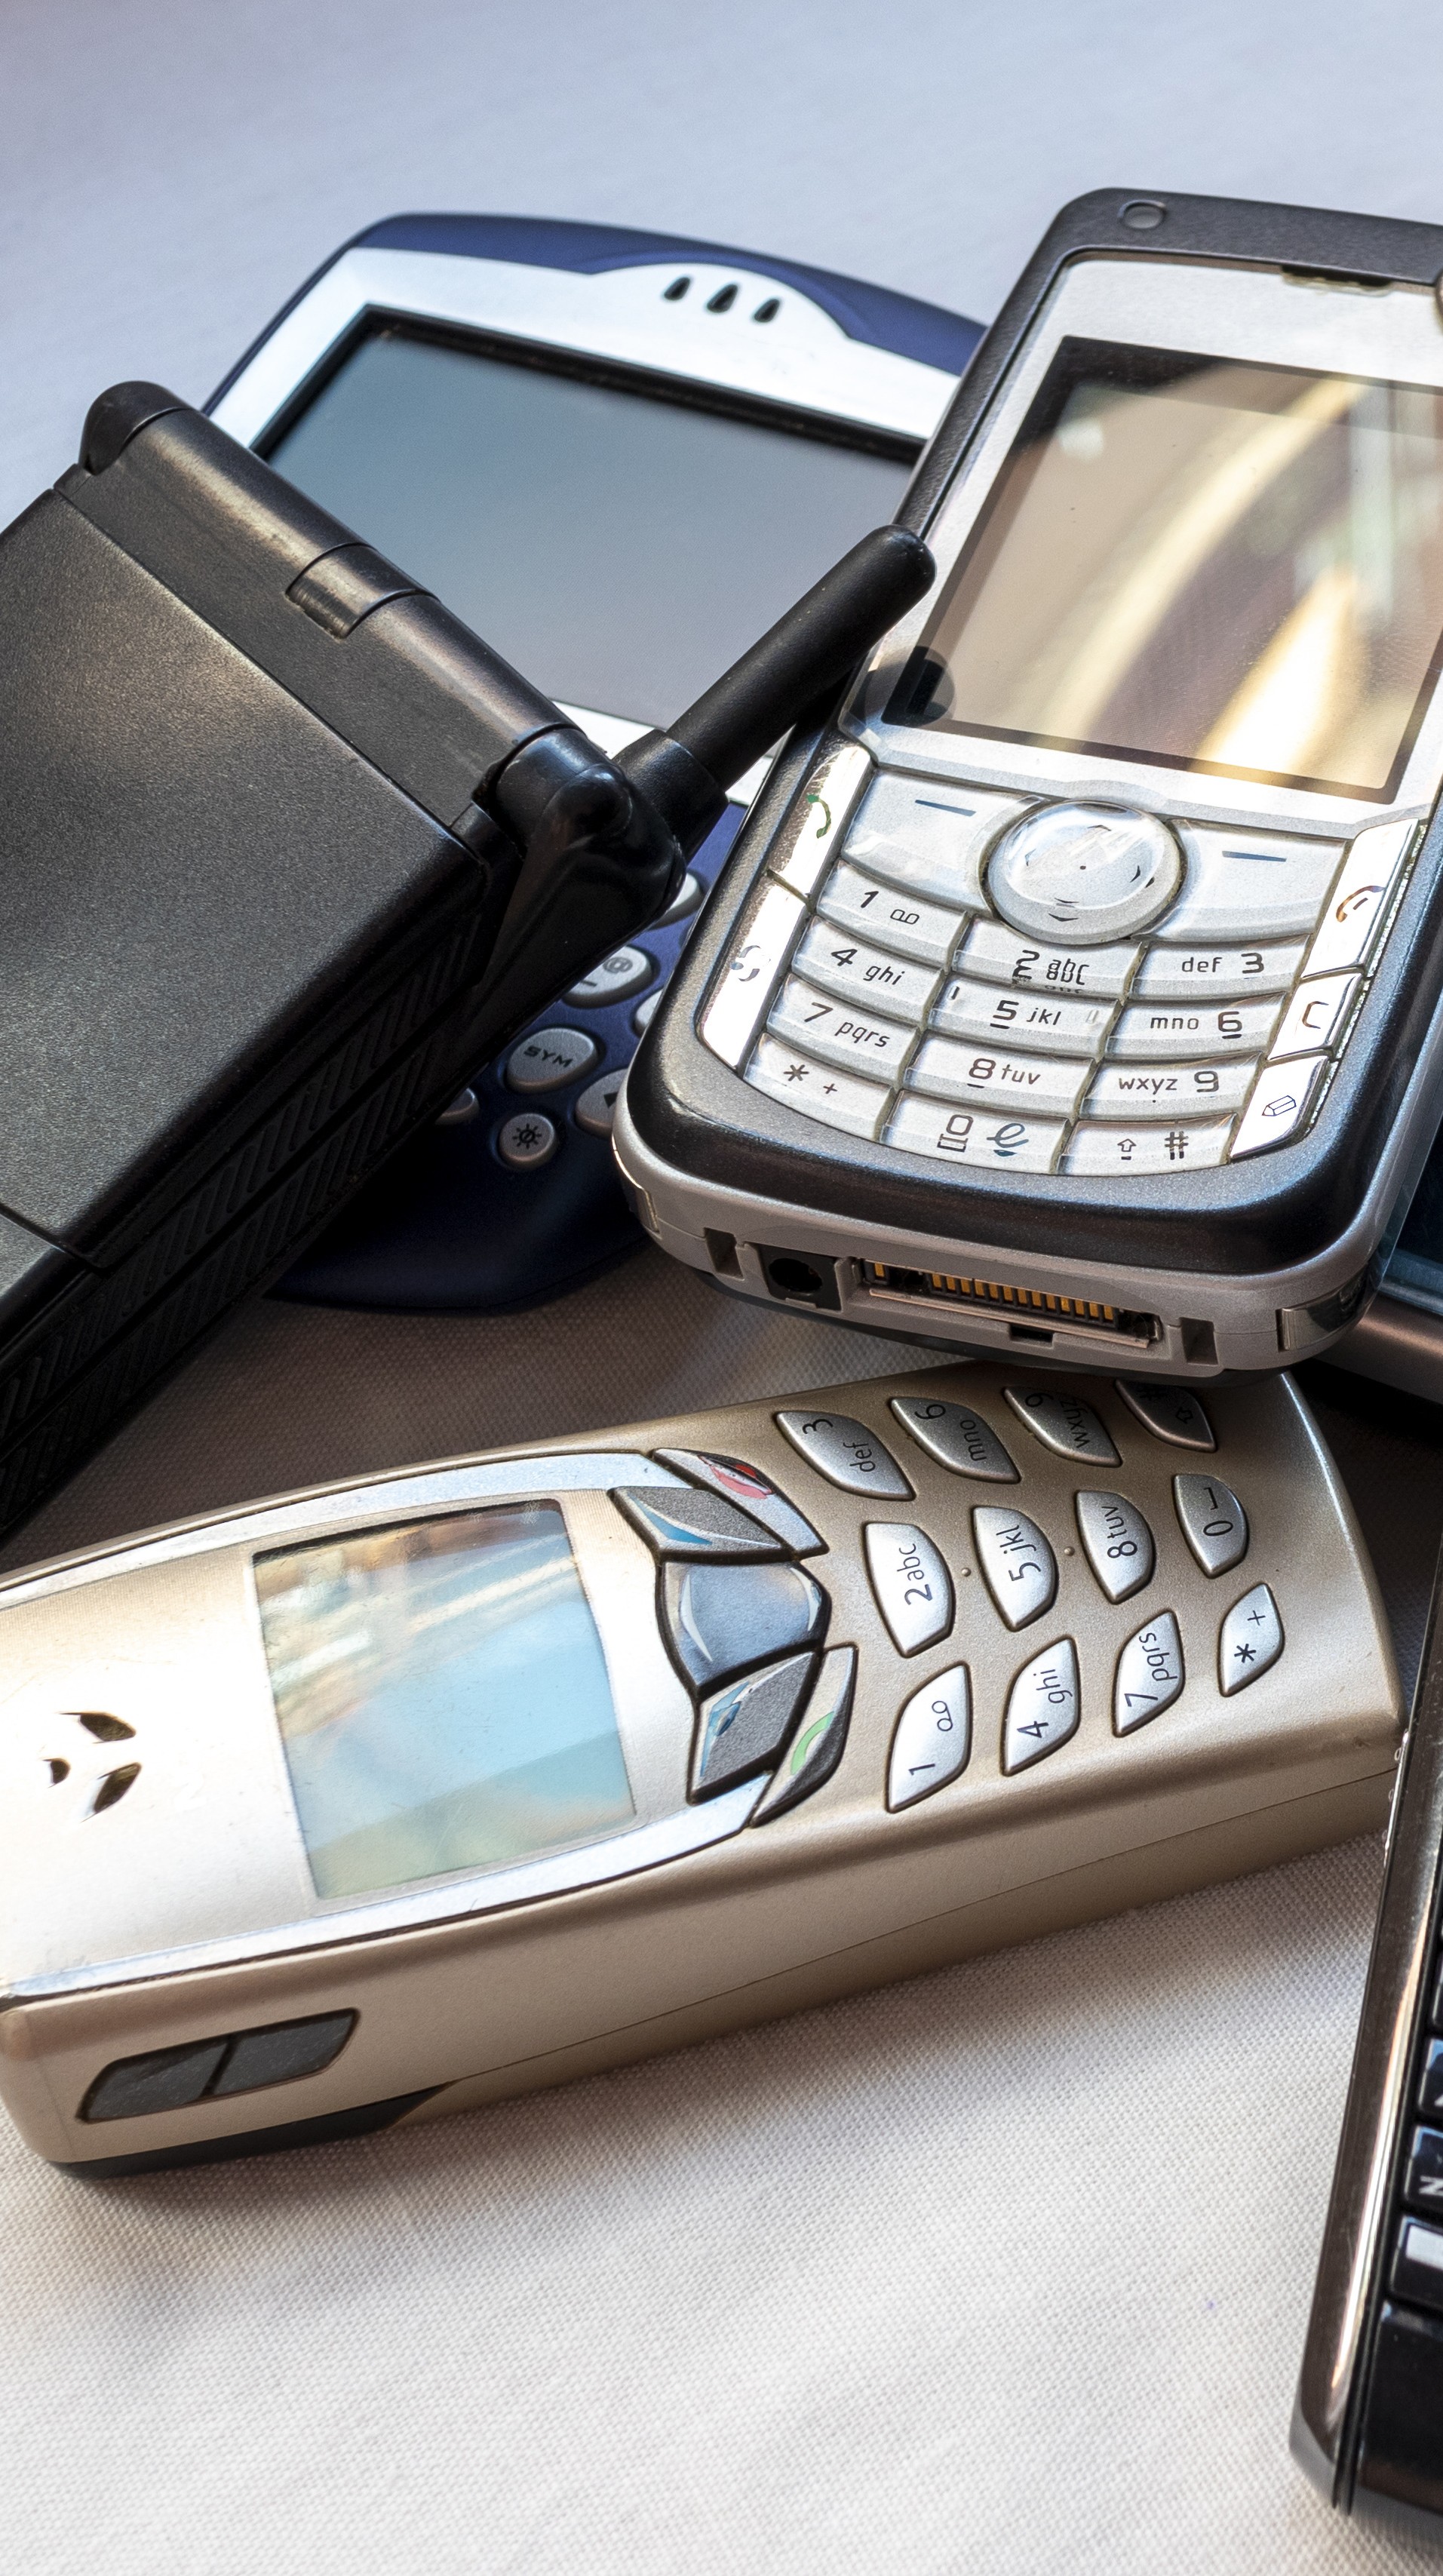 6 recursos dos celulares antigos que fazem falta nos smartphones